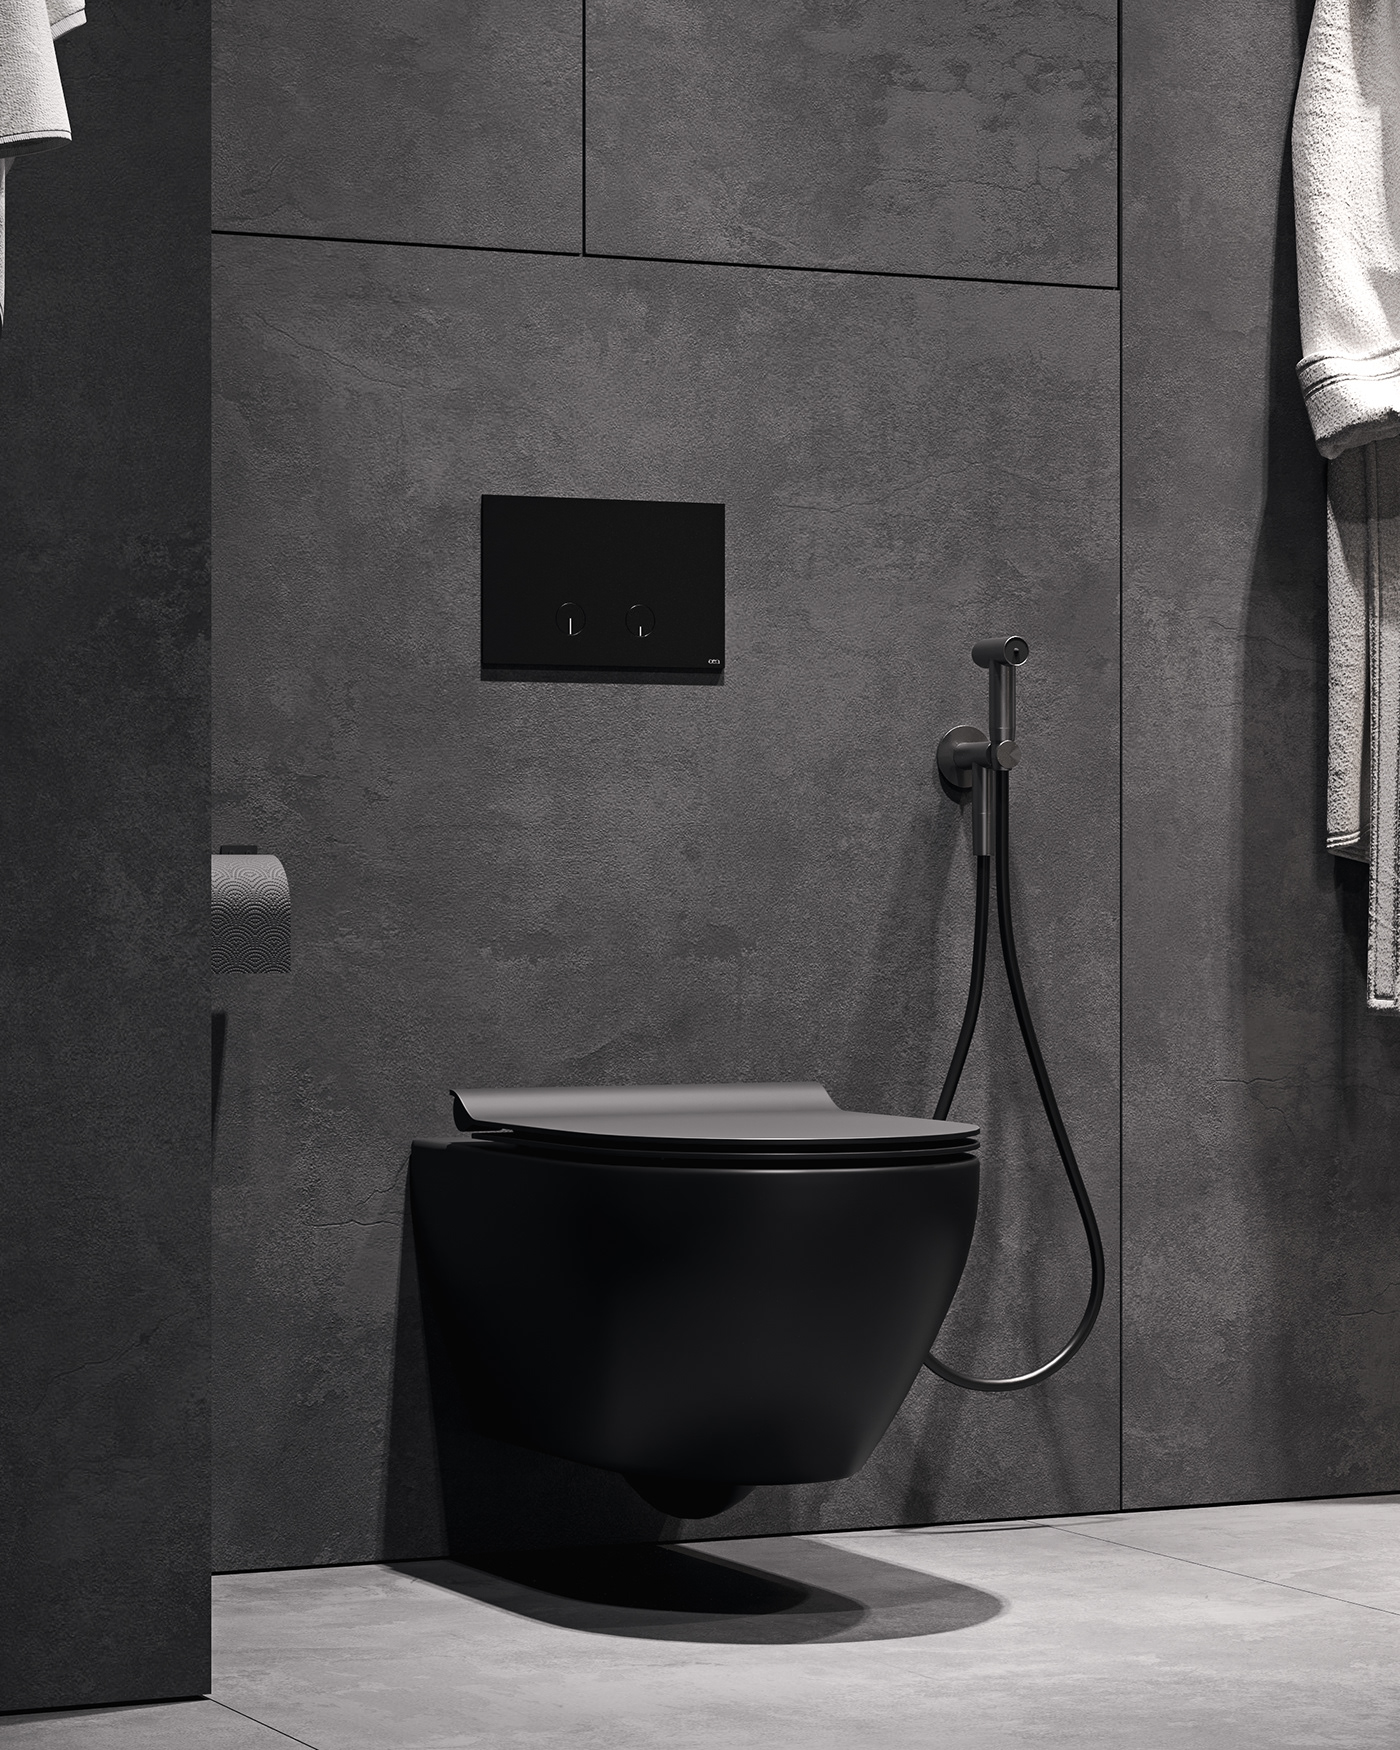 apartment bathroom black design Interior interiordesign Minimalism SHOWER